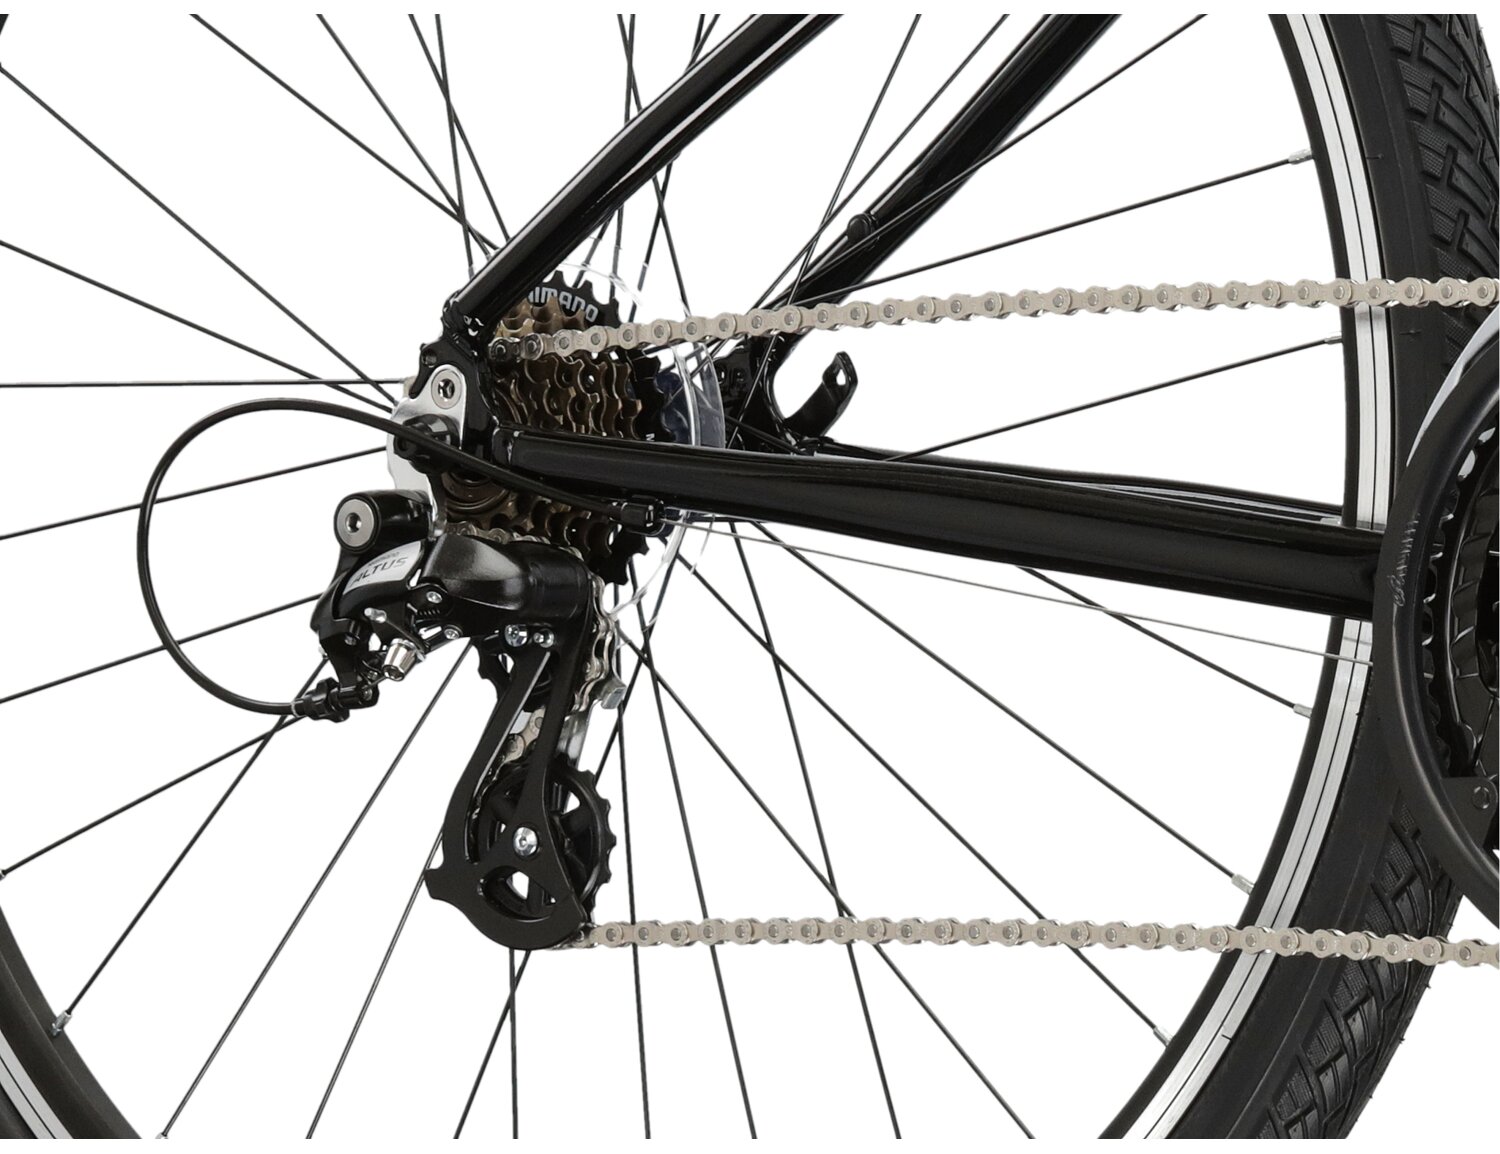  Tylna siedmiobiegowa przerzutka Shimano Altus M310 oraz hamulce v-brake w rowerze crossowym damskim KROSS Evado 2.0 